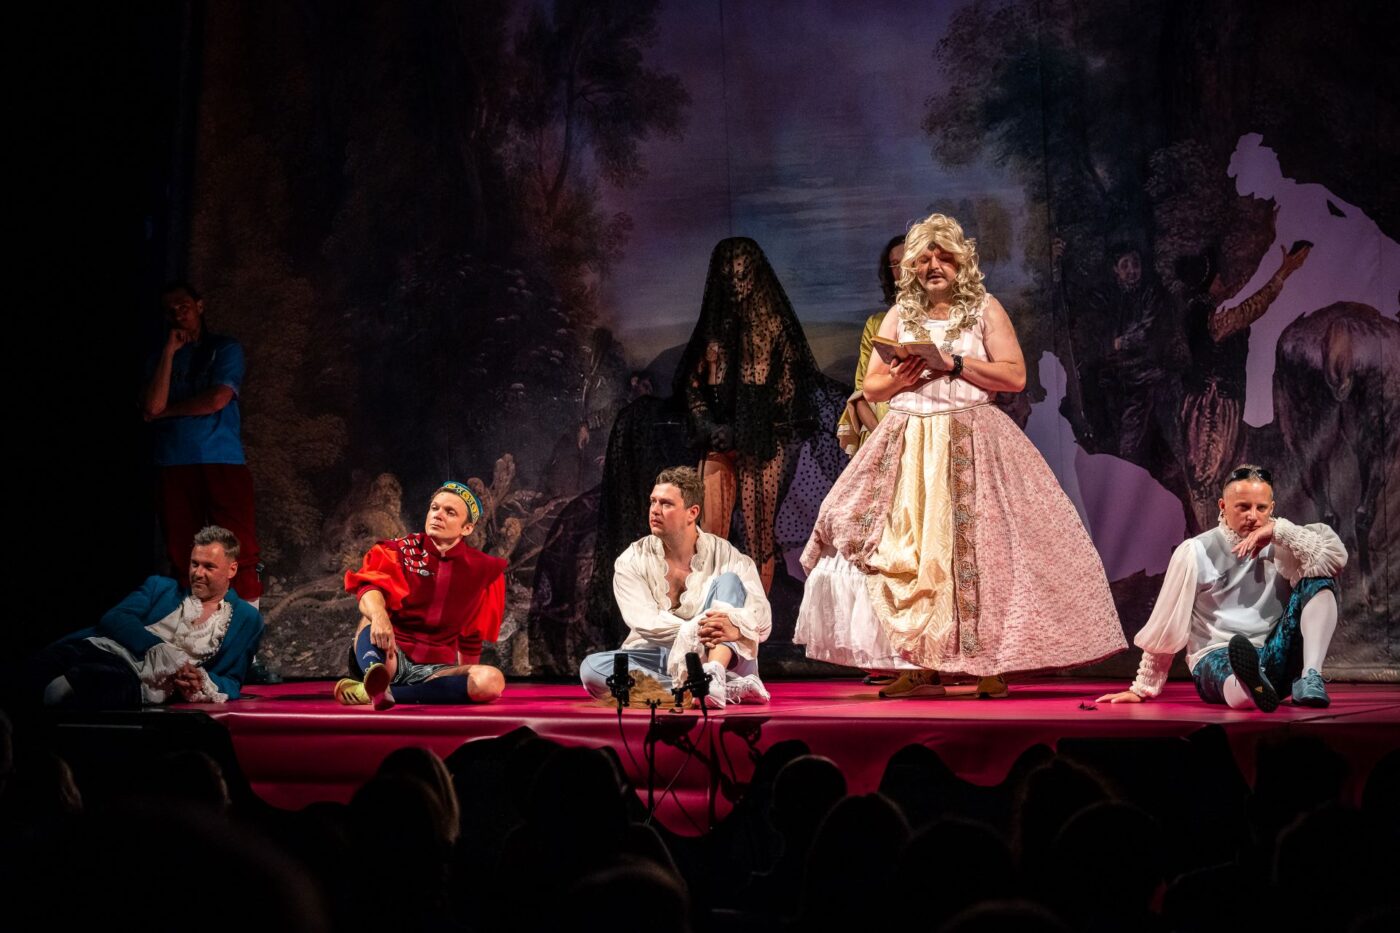 Scena z Poskromienia złośnicy. Mężczyzna w stronu kobiety (grający rolę Katarzyny) stoi na scenie w blond peruce i odczytuje list. Reszta bohatwrów spektaklu siedzi na scenie z różowej wykładziny.